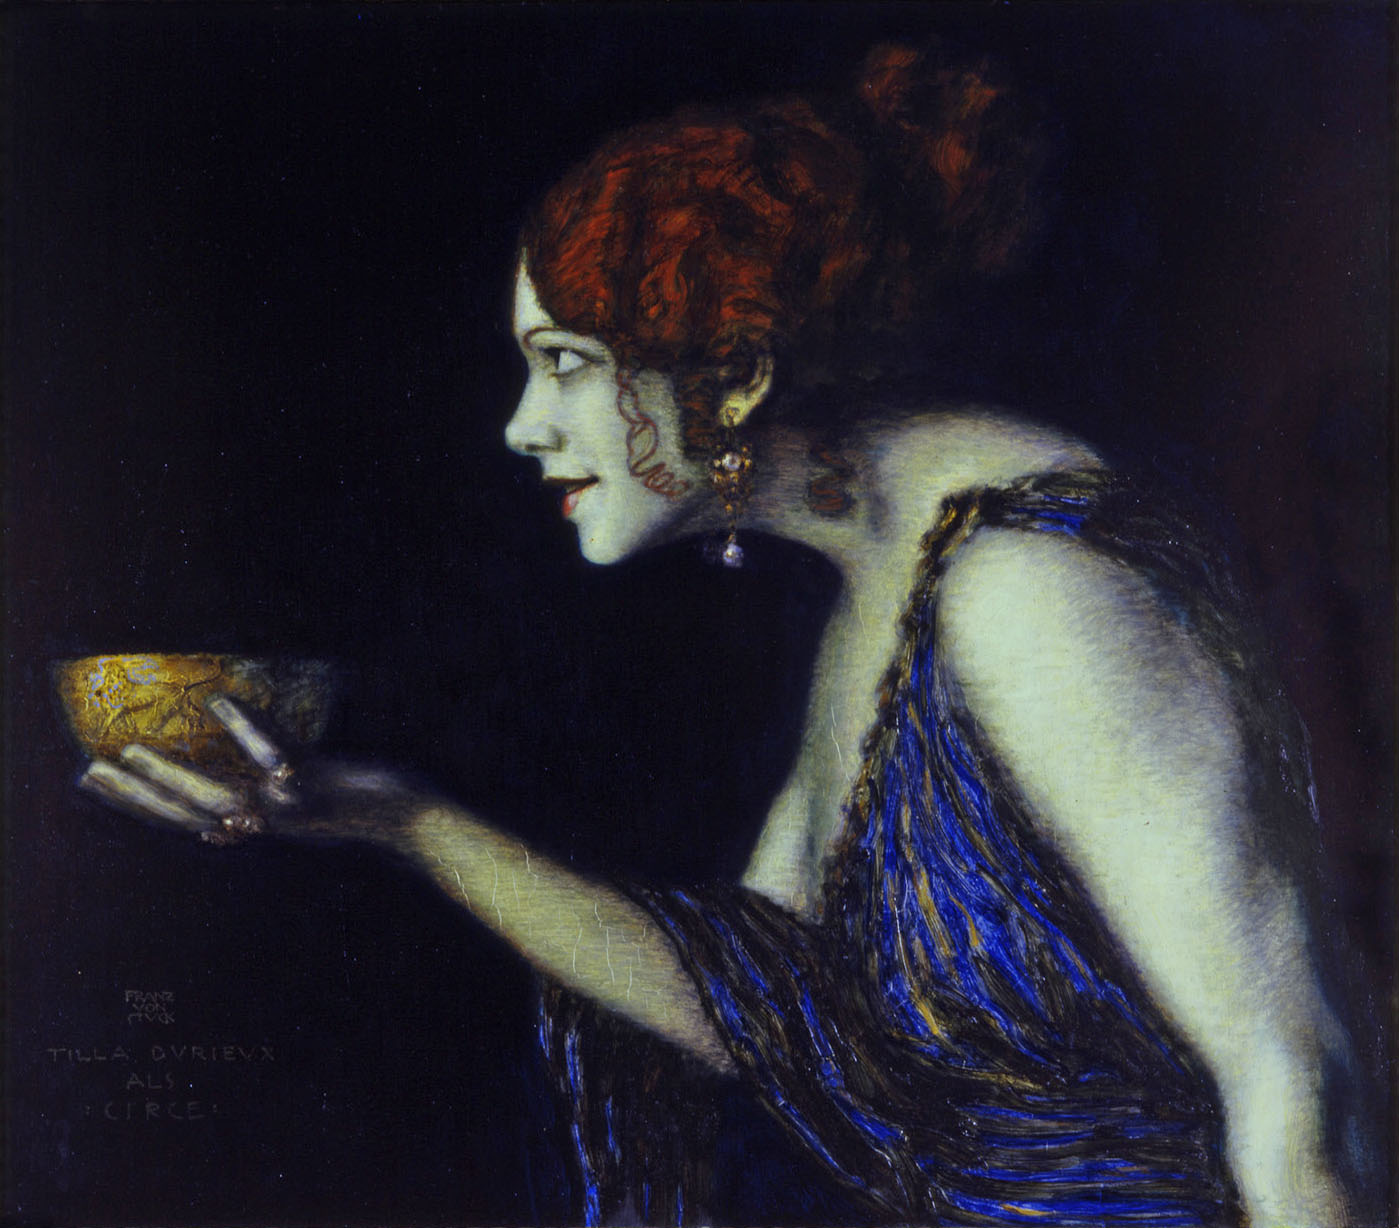 Franz von Stuck :: Tilla Durieux as Circe, circa 1913. Oil on wood. | Staatliche Museen zu Berlin